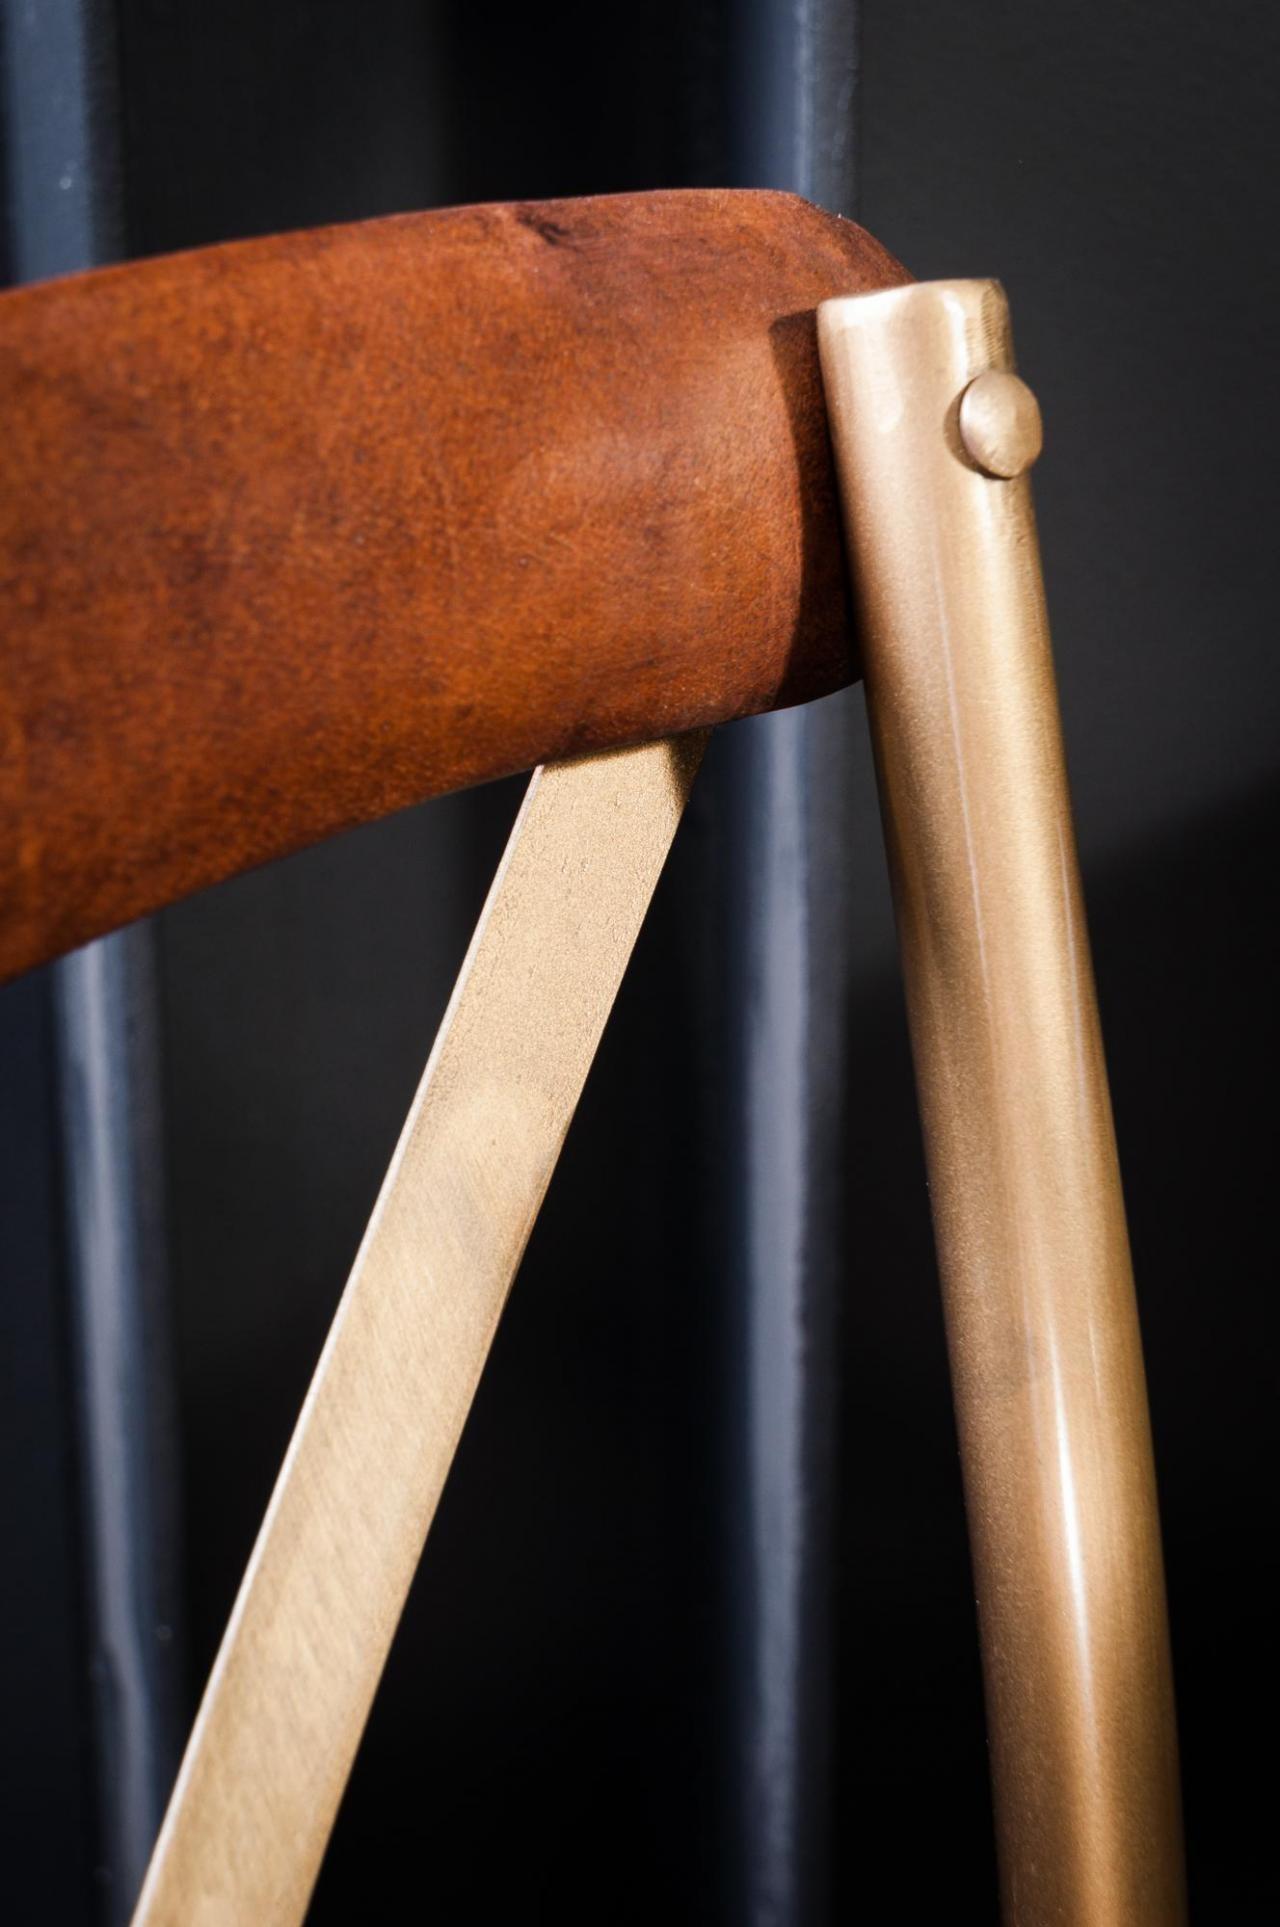 Eleganter Barhocker im Stil der alten französischen Bistros, mit Metallstruktur und Sitz und Rückenlehne aus Leder, der Qualität, Robustheit und Klasse vereint. Bequem und ergonomisch, Luft und Design.